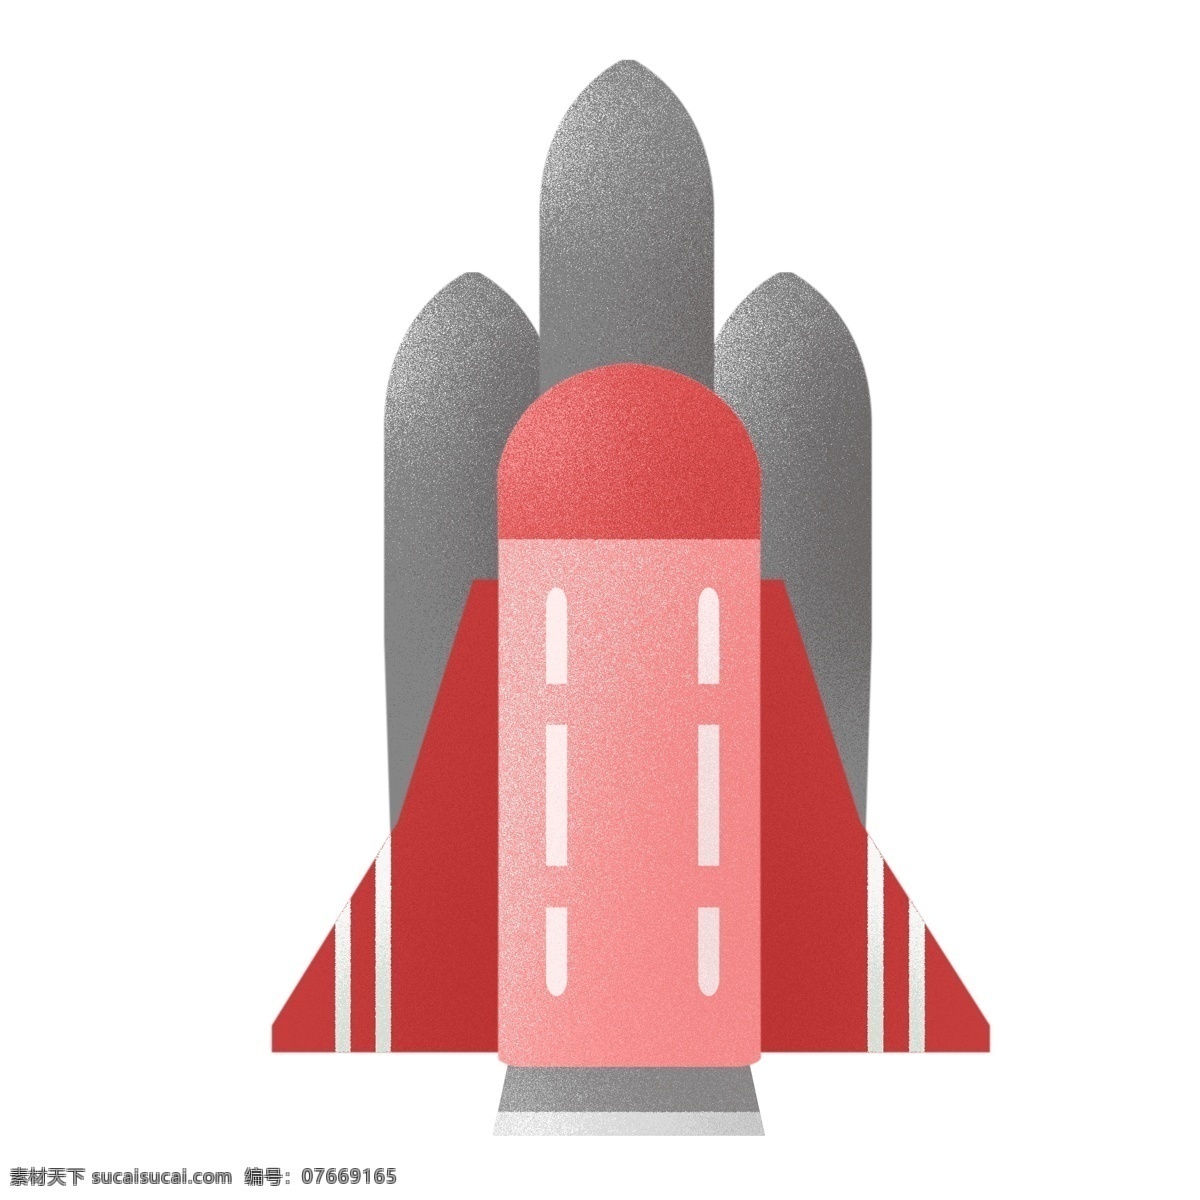 红色 火箭 图标 免 抠 宇宙 卡通火箭 红色火箭 火箭舱 原创手绘 卡通 可爱 简单 简洁 简约 飞天 航天科技 科学